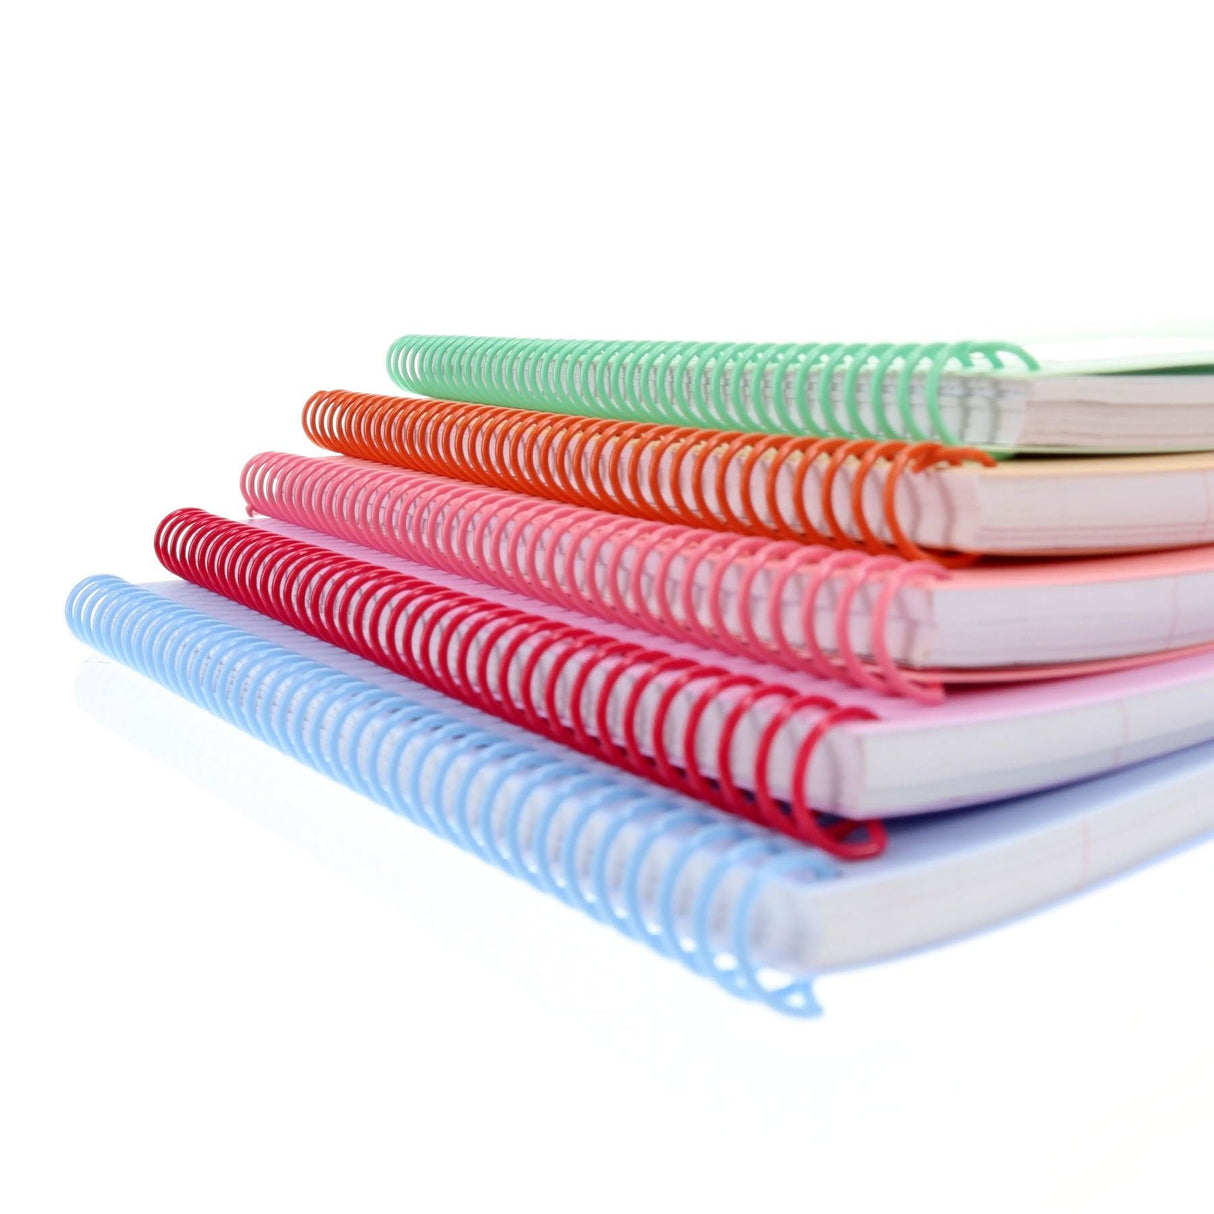 Premto Pastel A4 Spiral Notebook PP - 160 Pages - Pink Sherbet | Stationery Shop UK